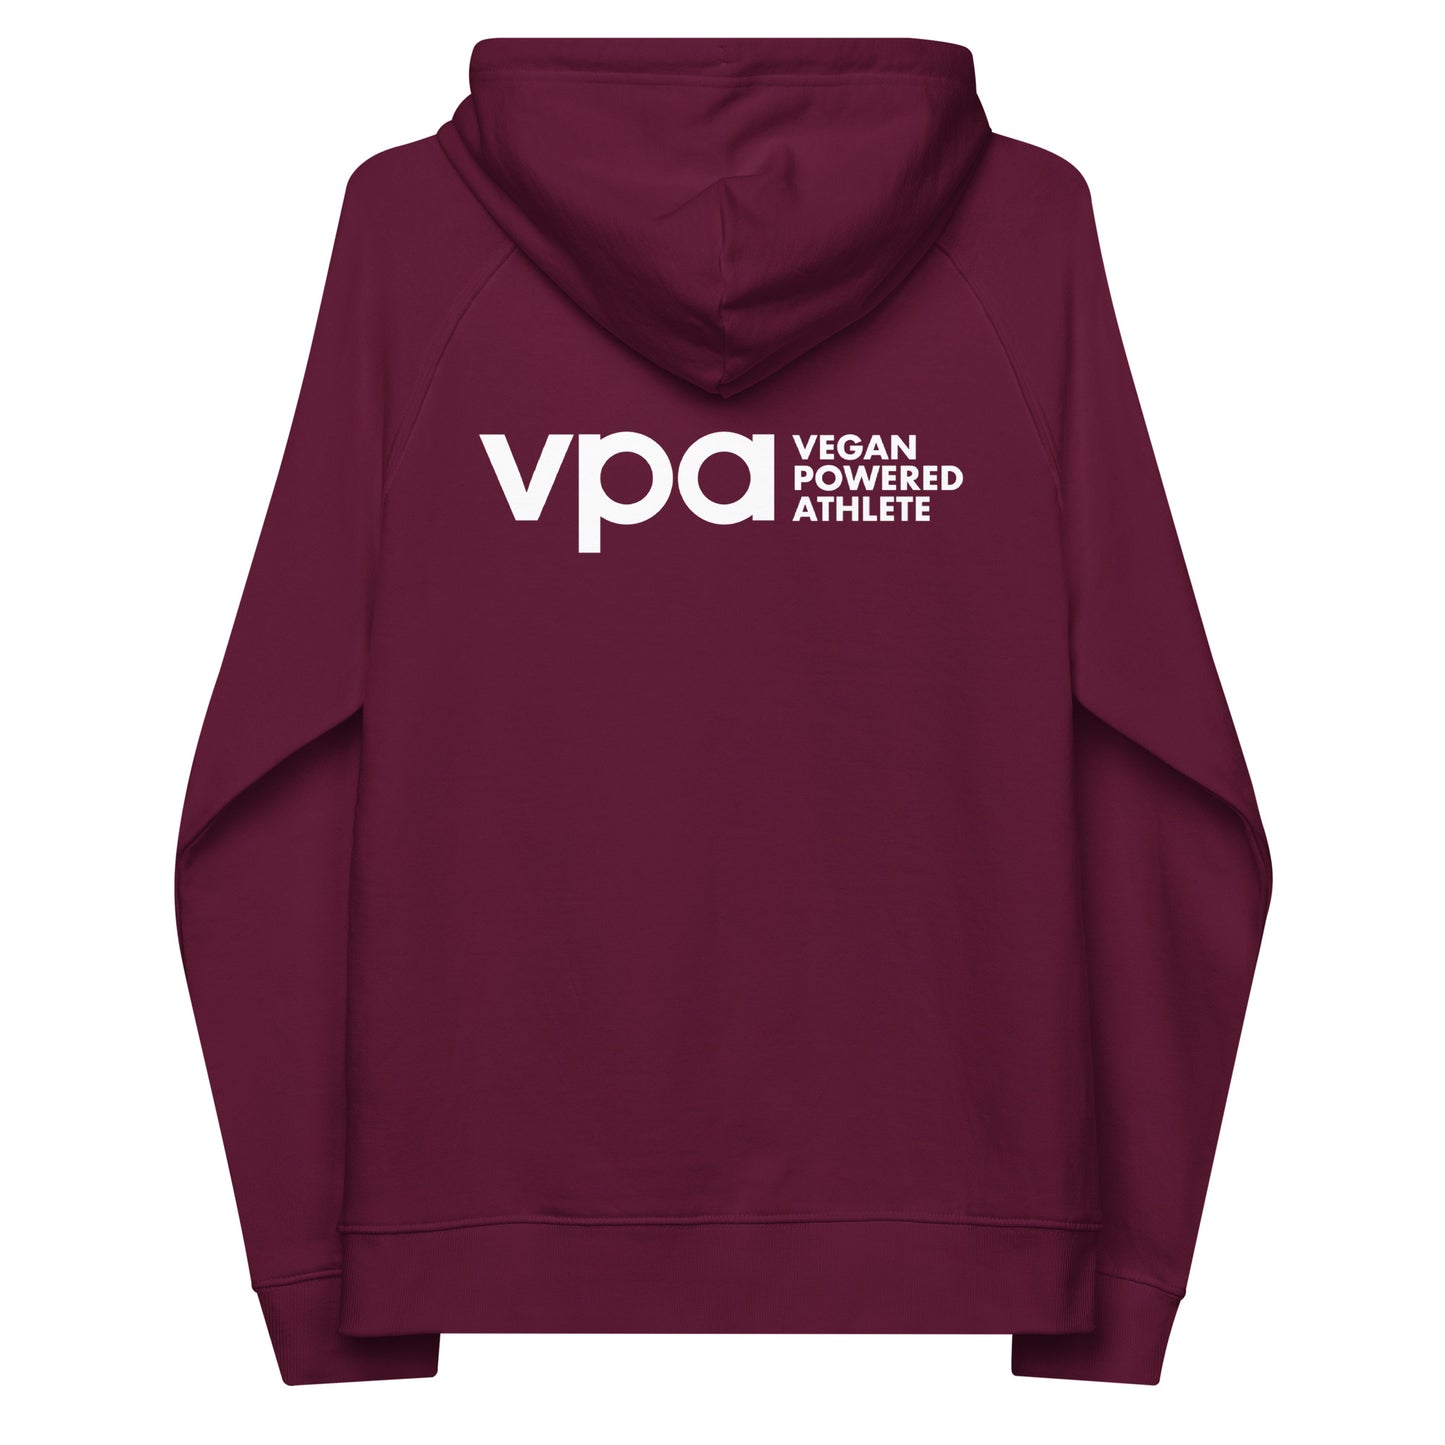 Load image into Gallery viewer, ECO VPA Vegan Powered Athlete Unisex raglan hoodie
